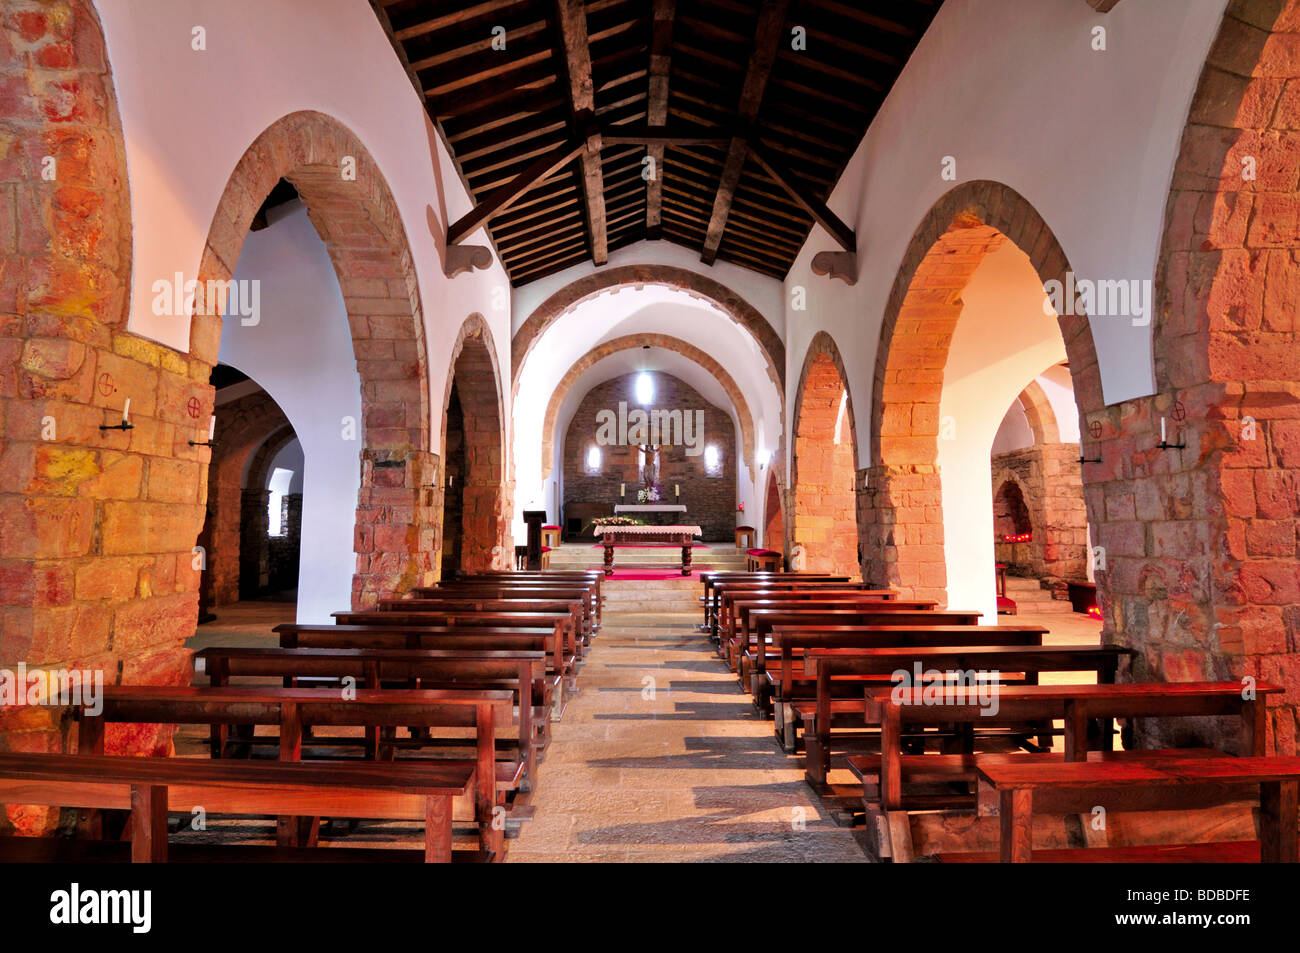 Spain, St. James Way: Nave of the romanesque church Iglesia de Santa Maria in O Cebreiro in Galicia Stock Photo